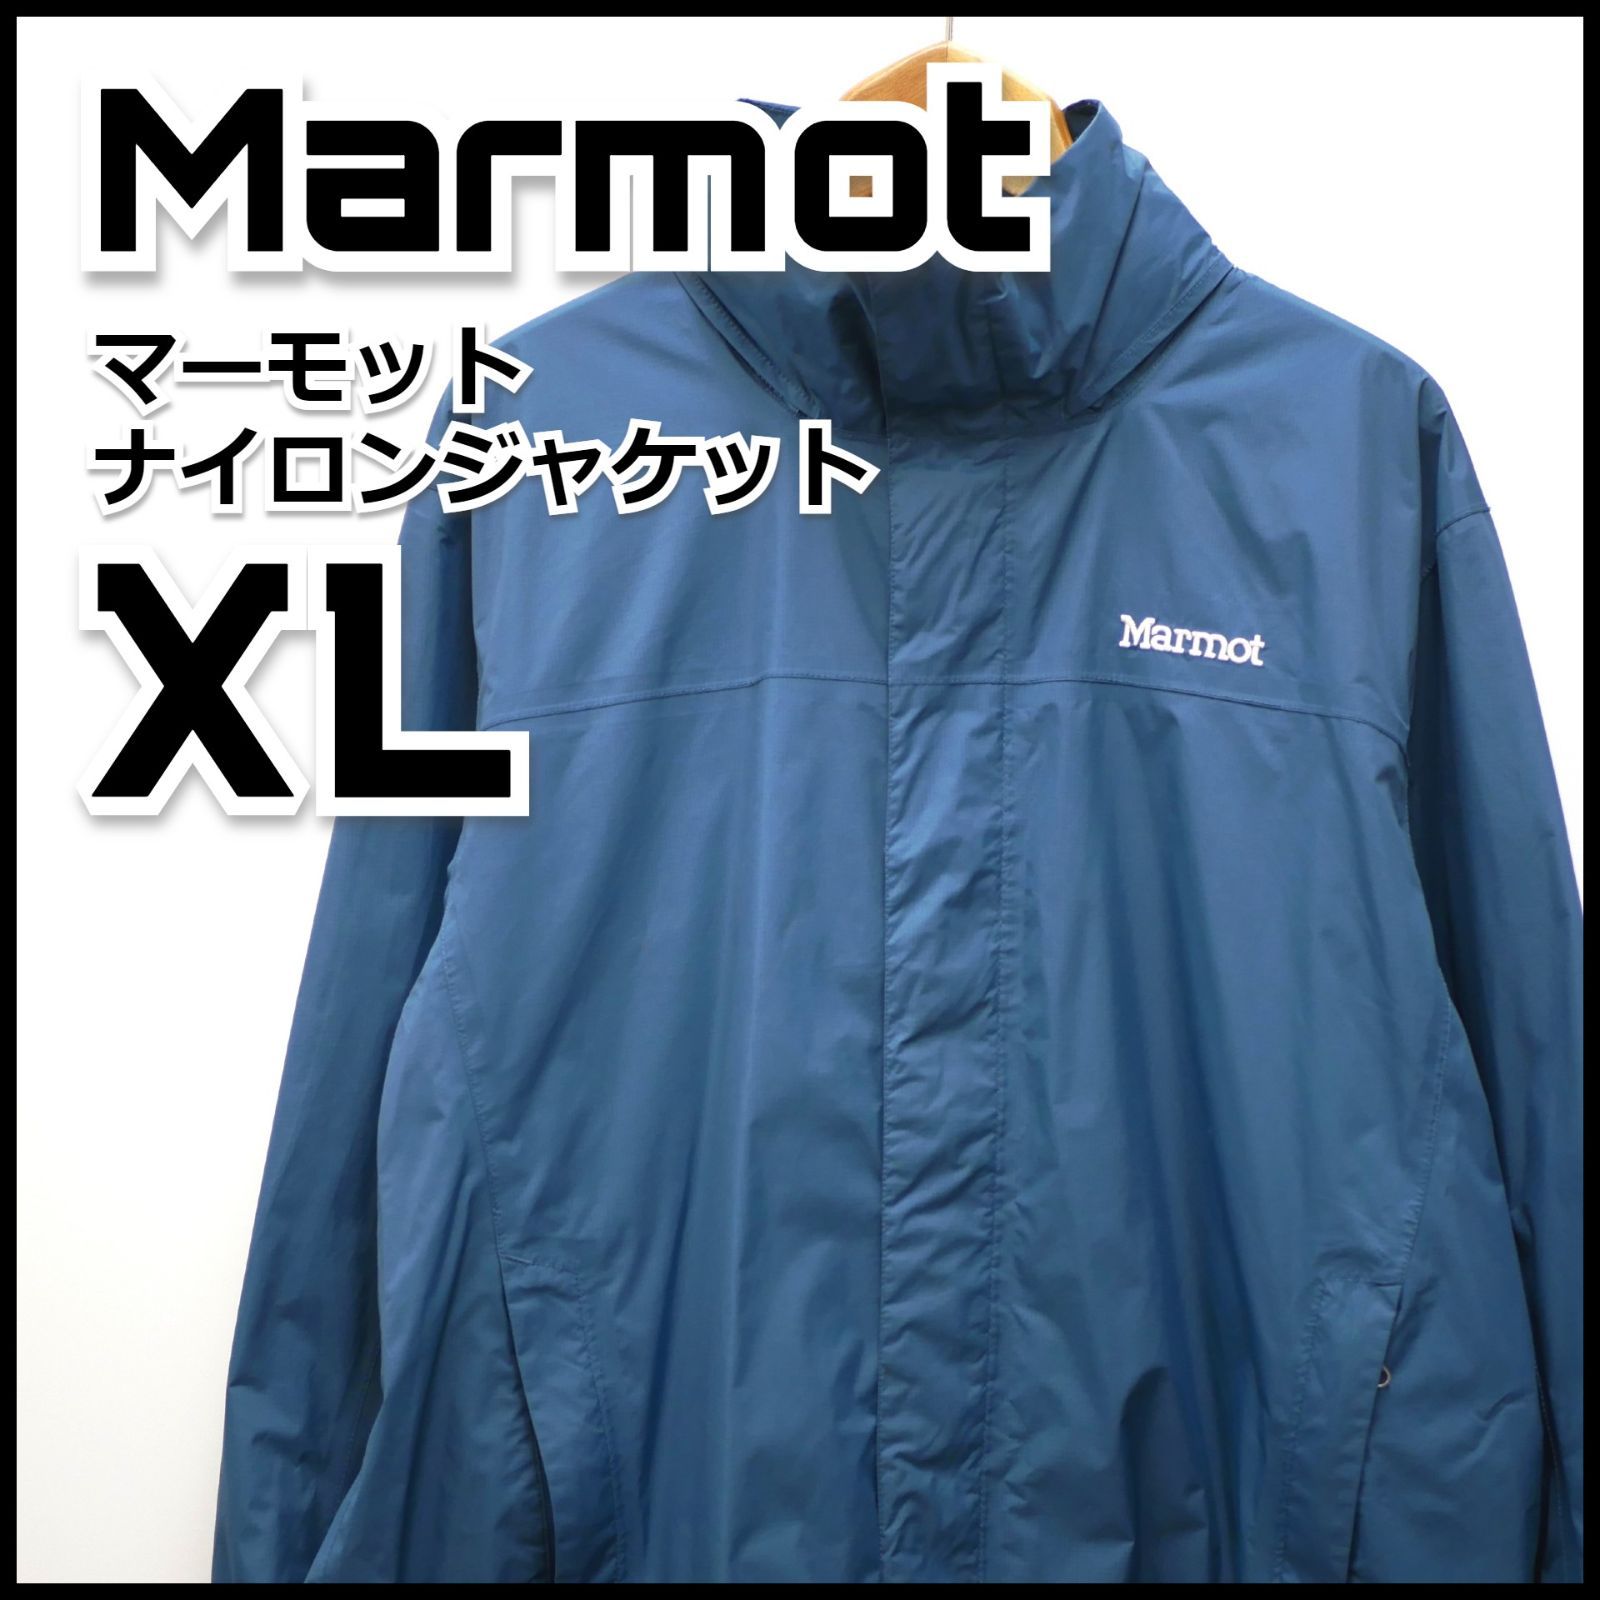 Marmot マーモット ナイロンジャケット レインウェア XL 防水 古着 